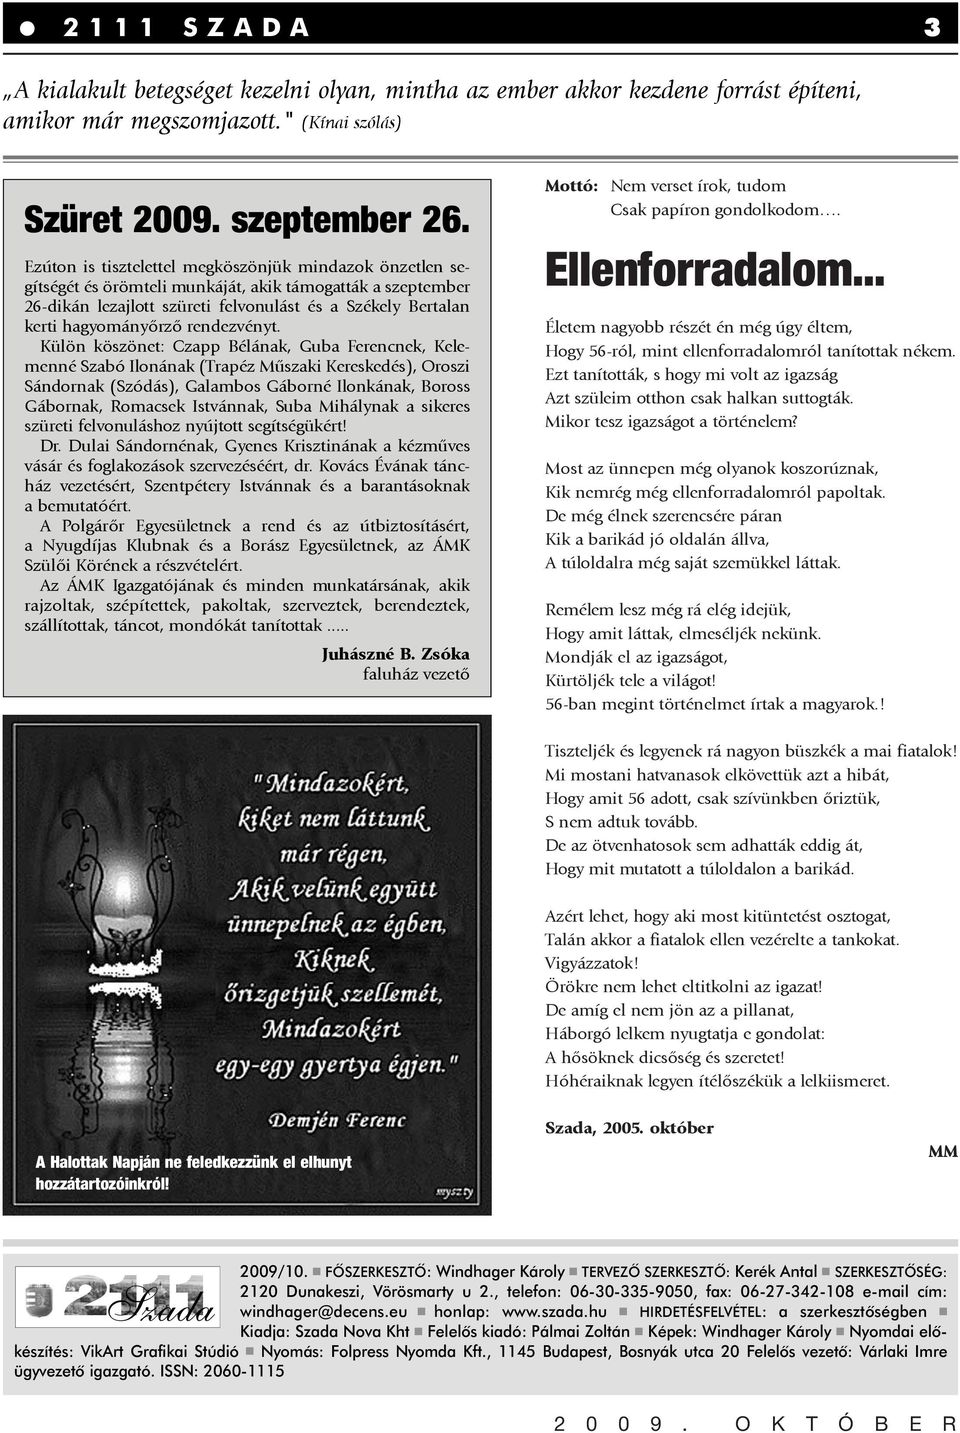 Ellenforradalom... Szada. Szüret szeptember SZADA 3 - PDF Free Download